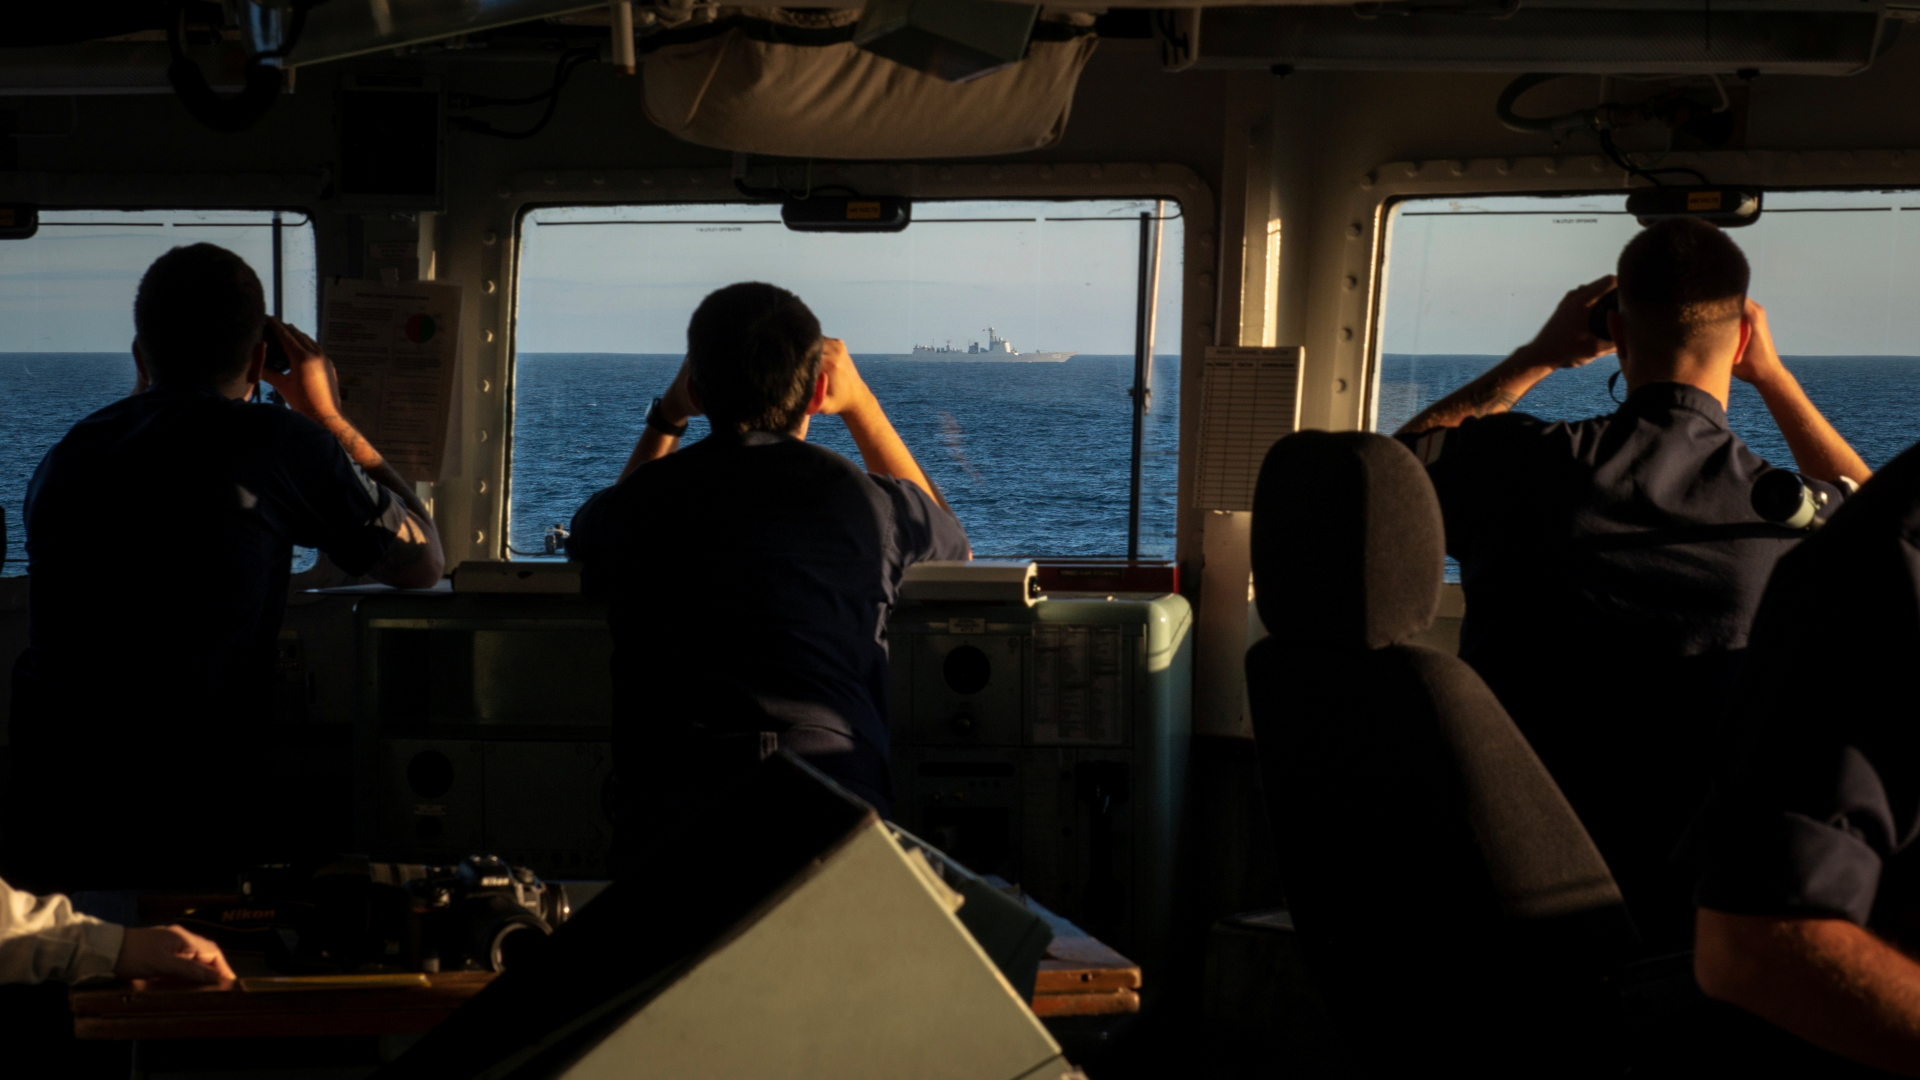 Dieses von der Royal Navy veröffentlichte Foto zeigt die Brückenbesatzung der Fregatte "St. Albans" bei der Eskorte eines chinesischen Kriegsschiffs durch den Ärmelkanal. | ROYAL NAVY